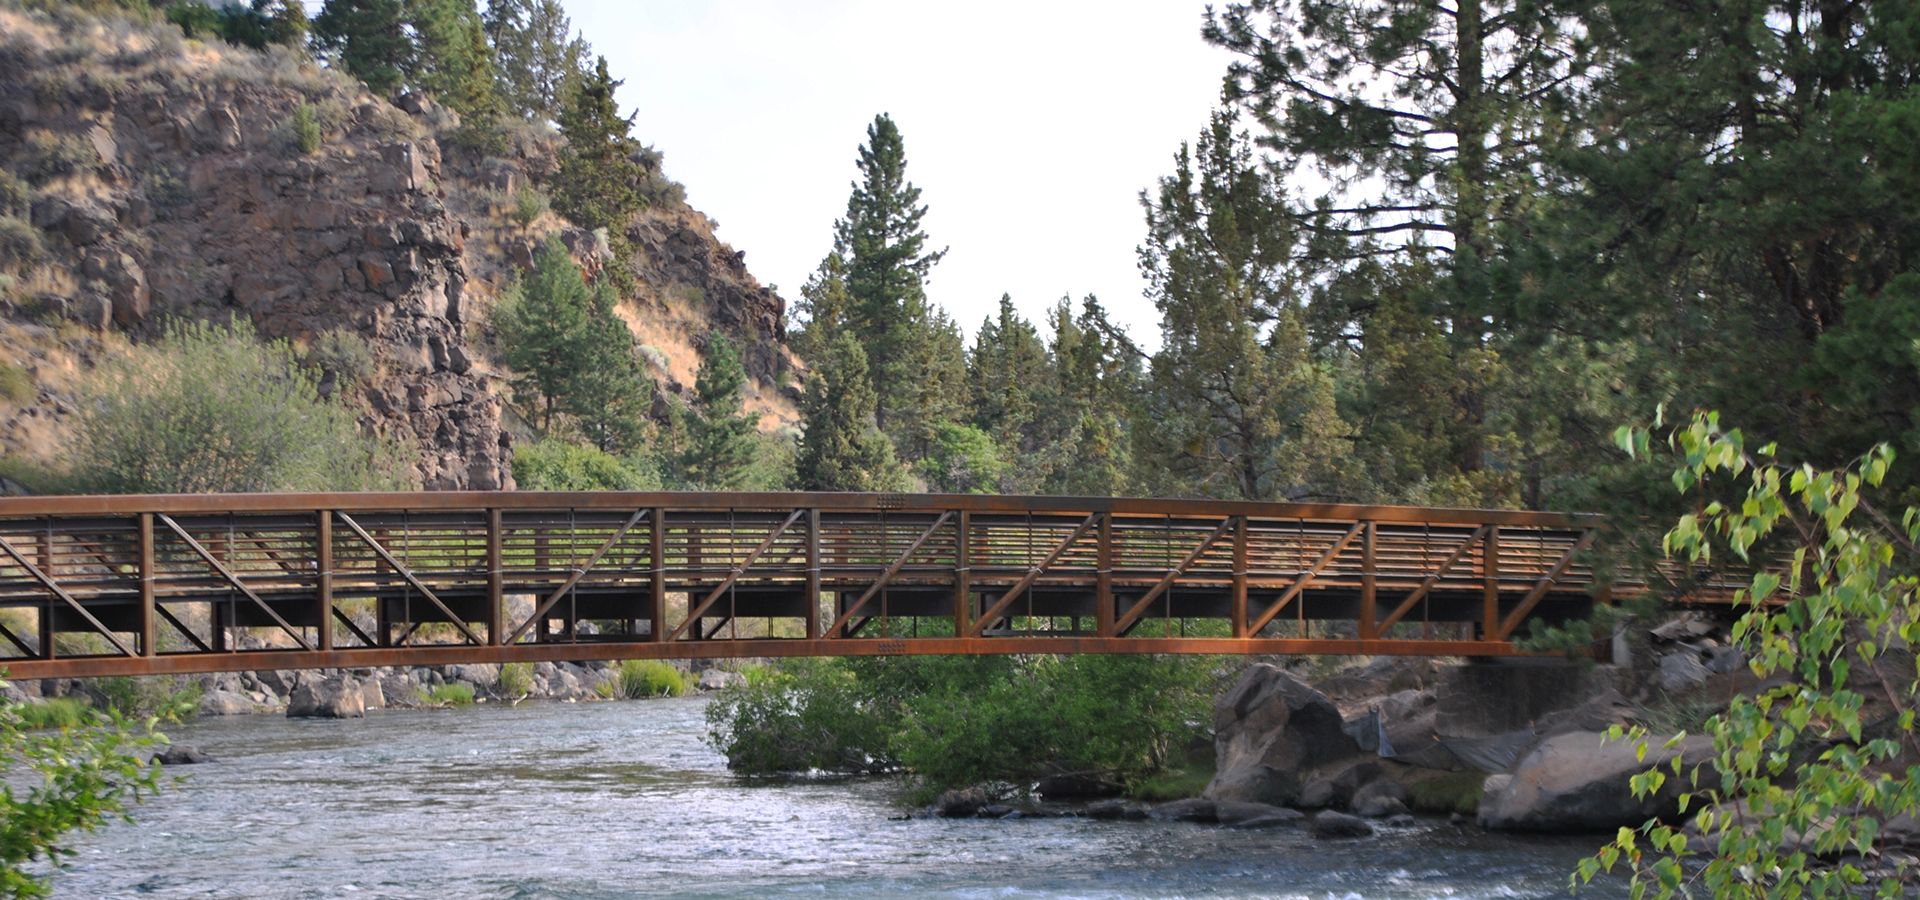 The pedestrian bridge at the Deschutes River.